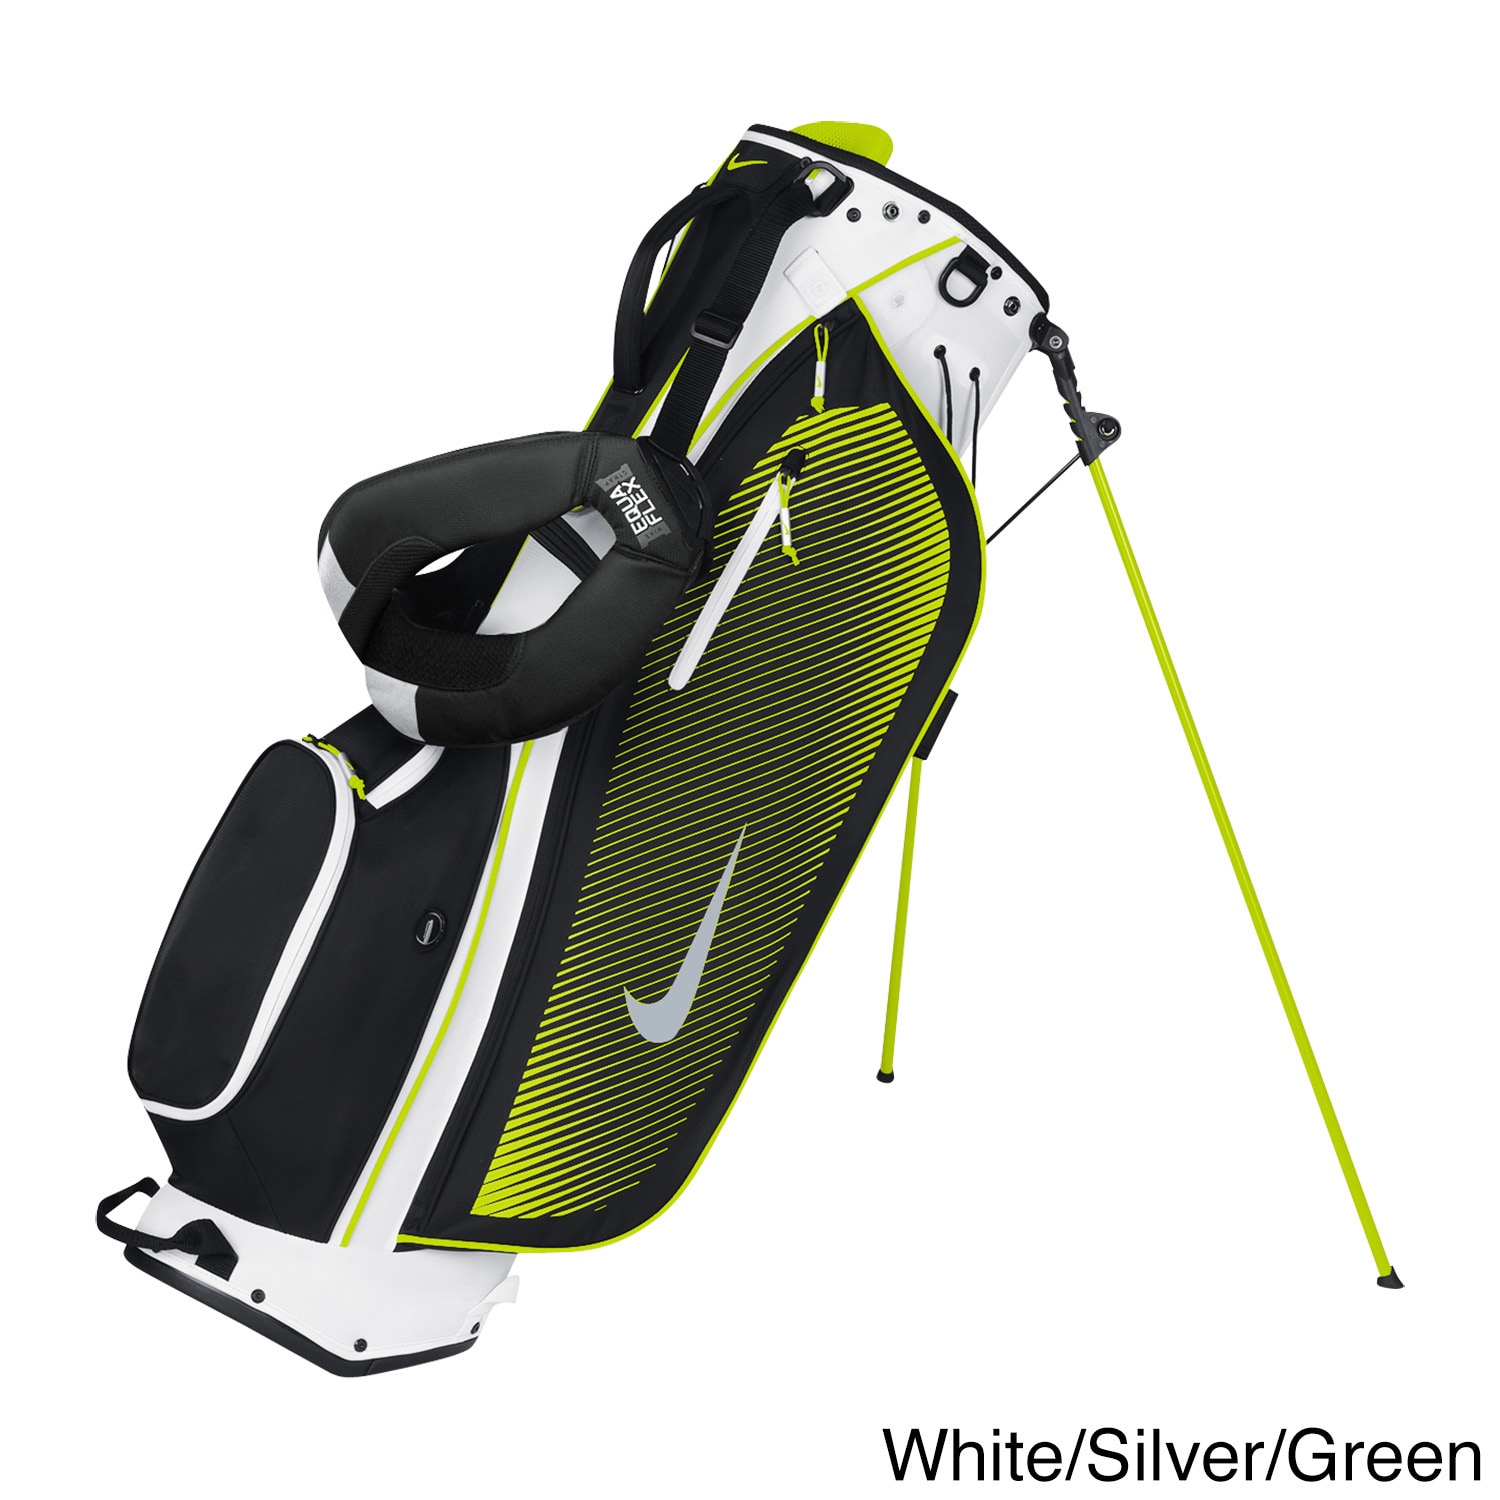 green nike golf bag